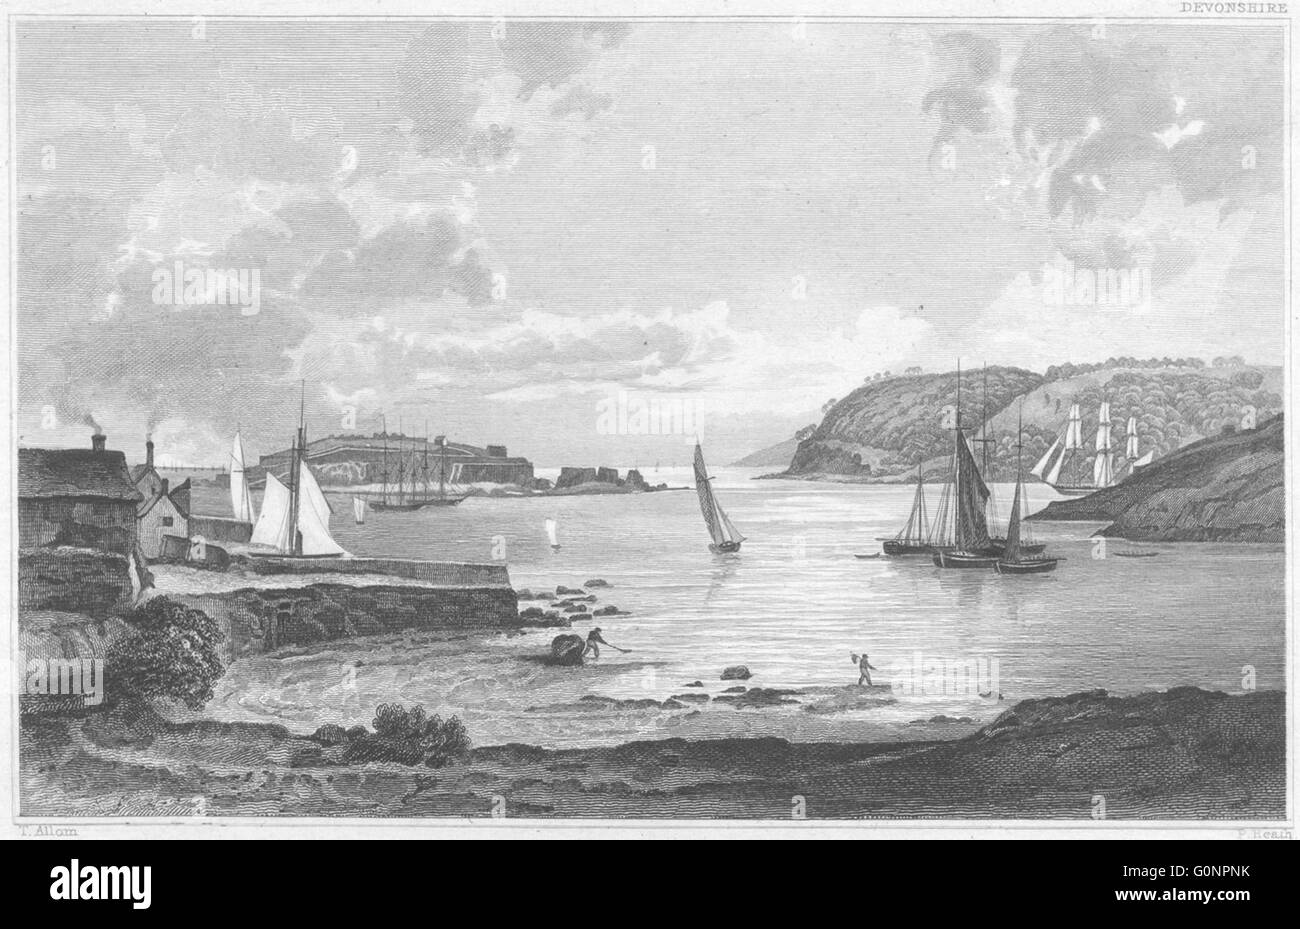 Saint-nicolas : DEVON ou Drake's Island, le Mont rapiécé Penlee & Point, 1829 Banque D'Images